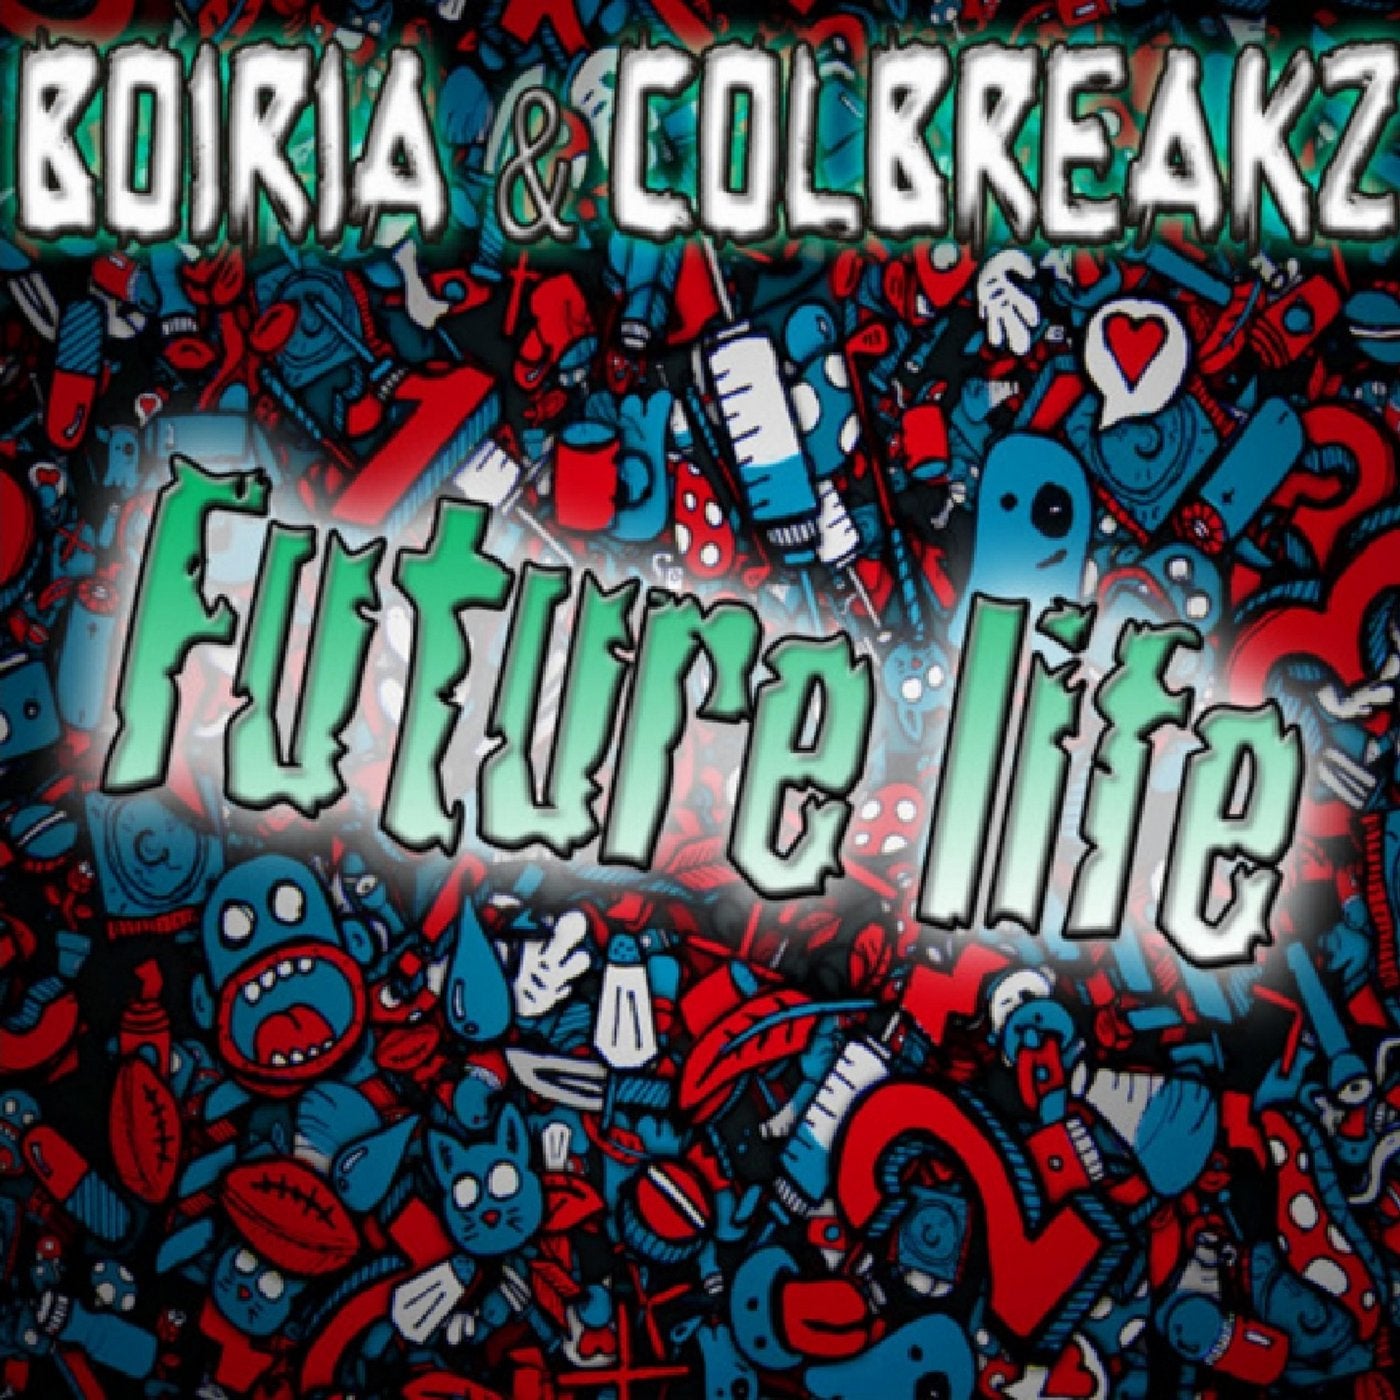 Future Life (feat. Boiria)